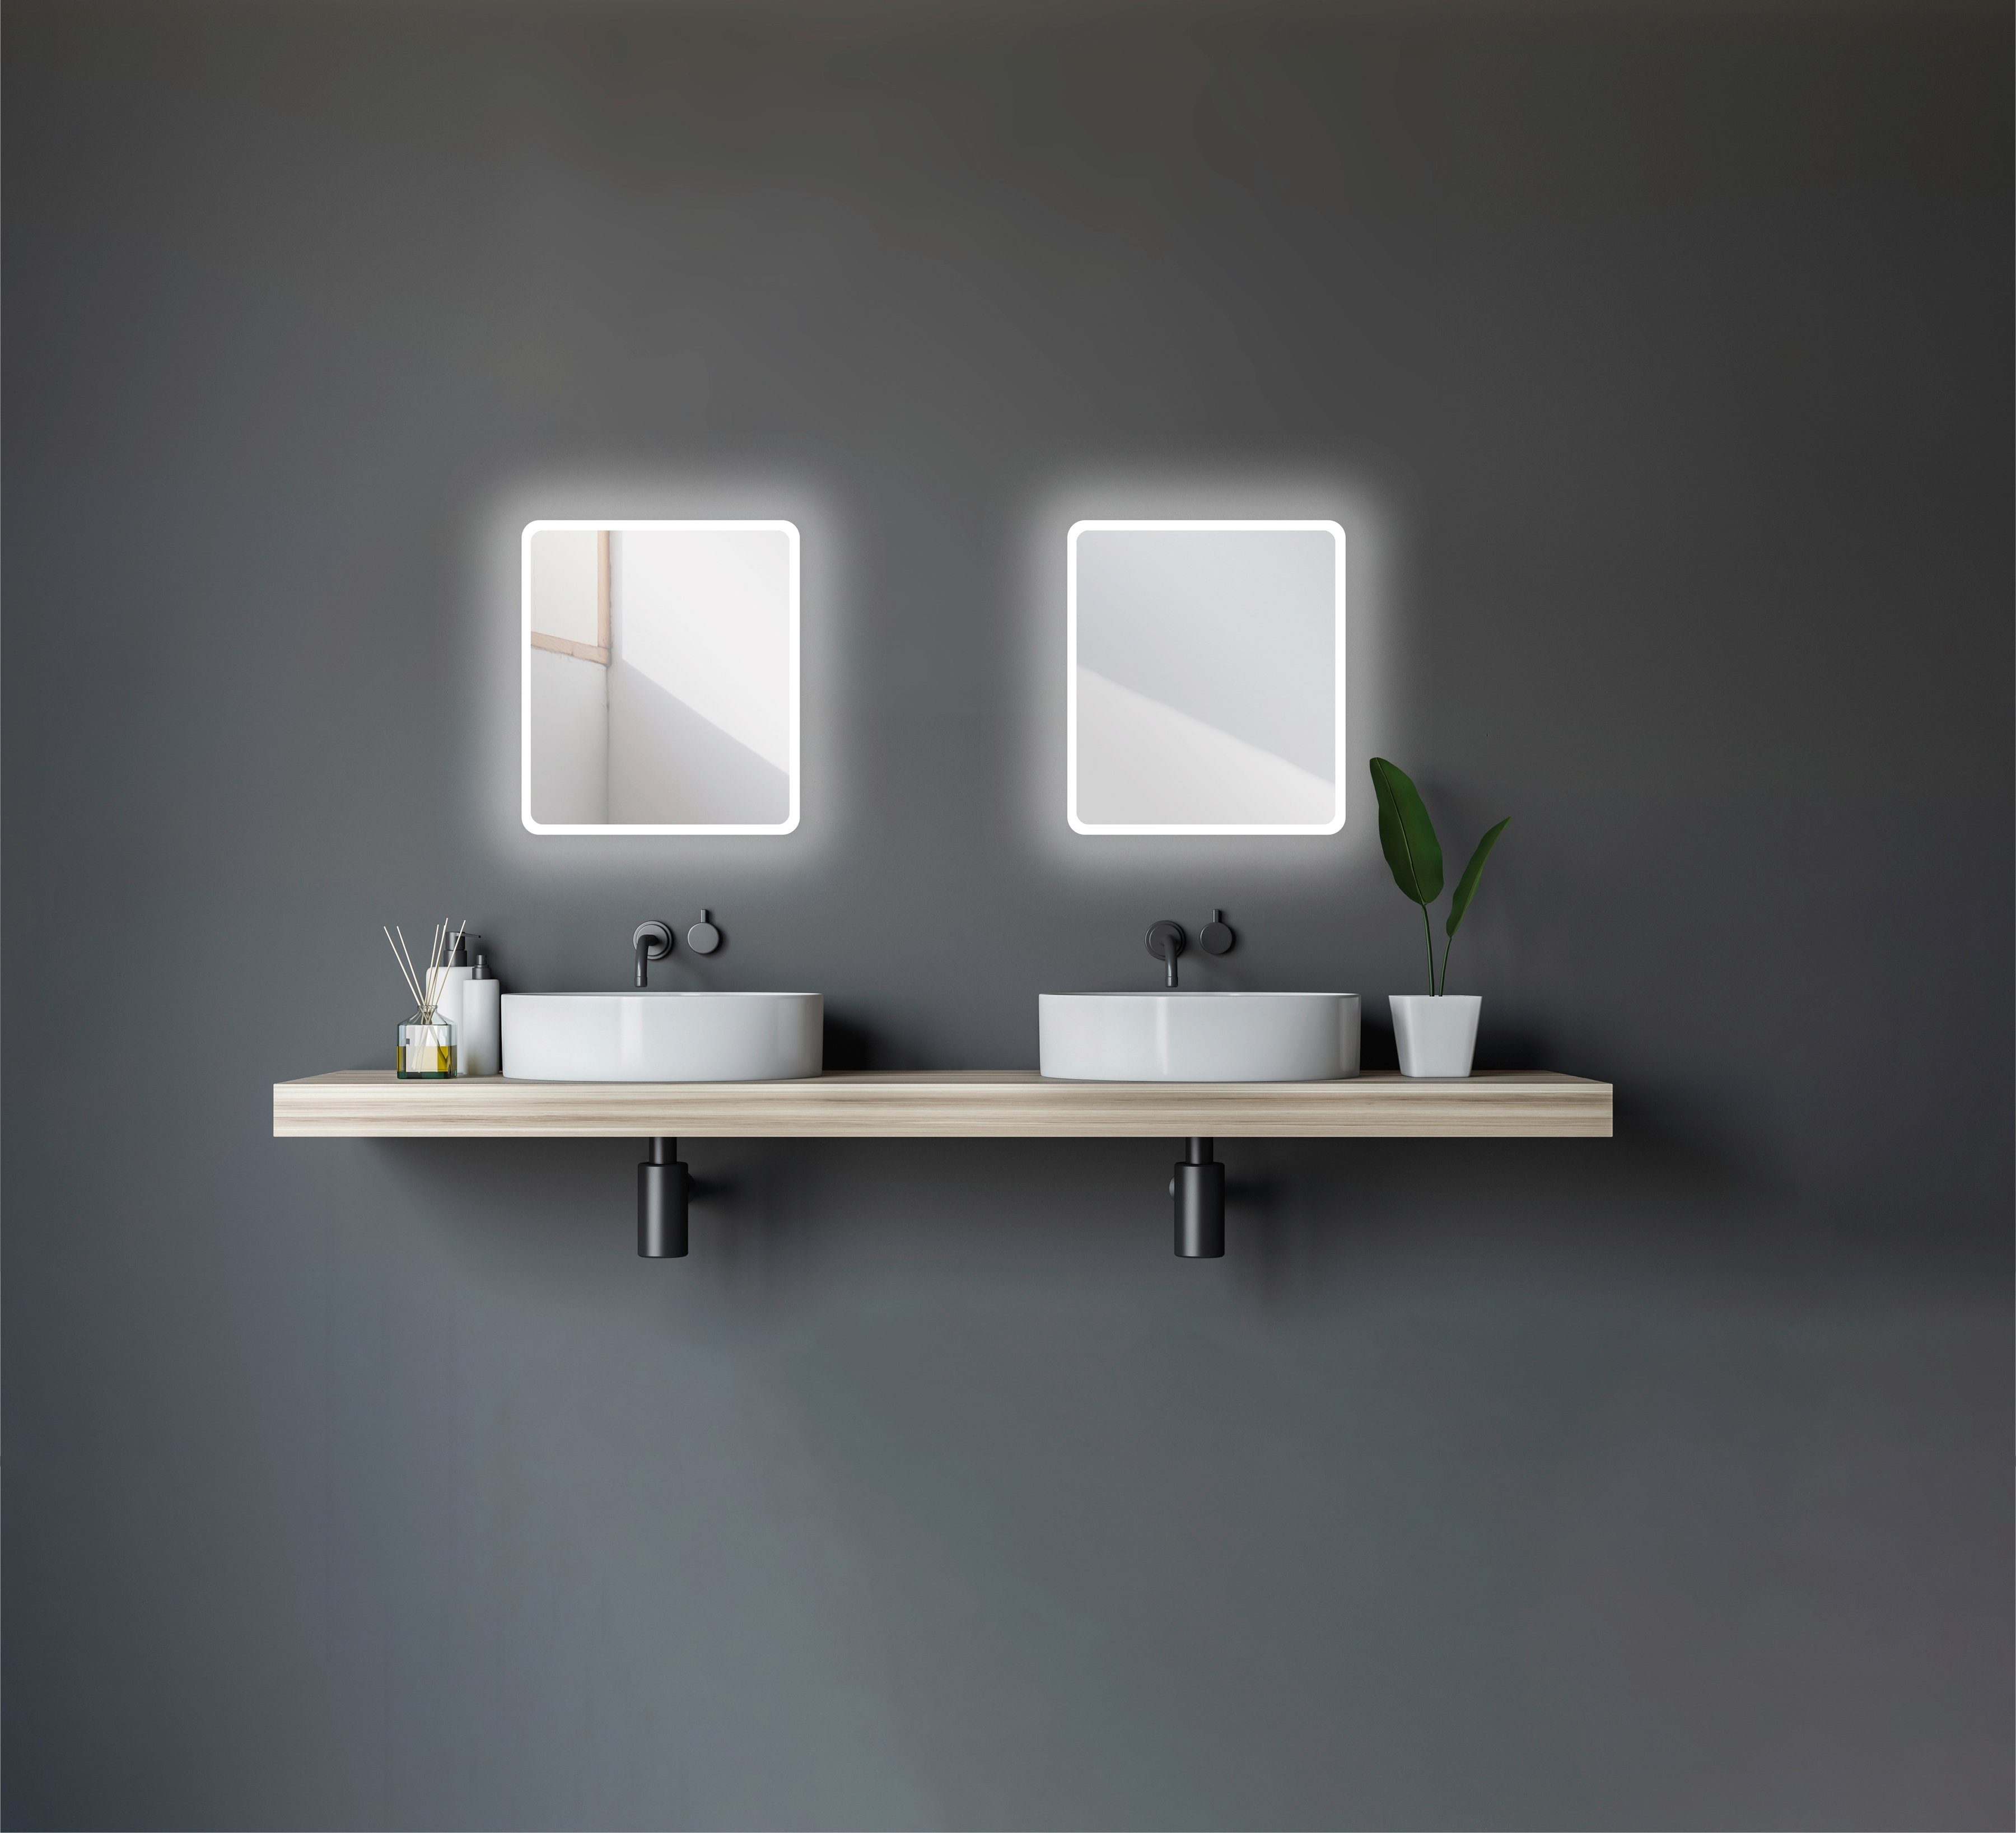 40 Lichtspiegel x 45 cm, Talos Moon, Badspiegel Design